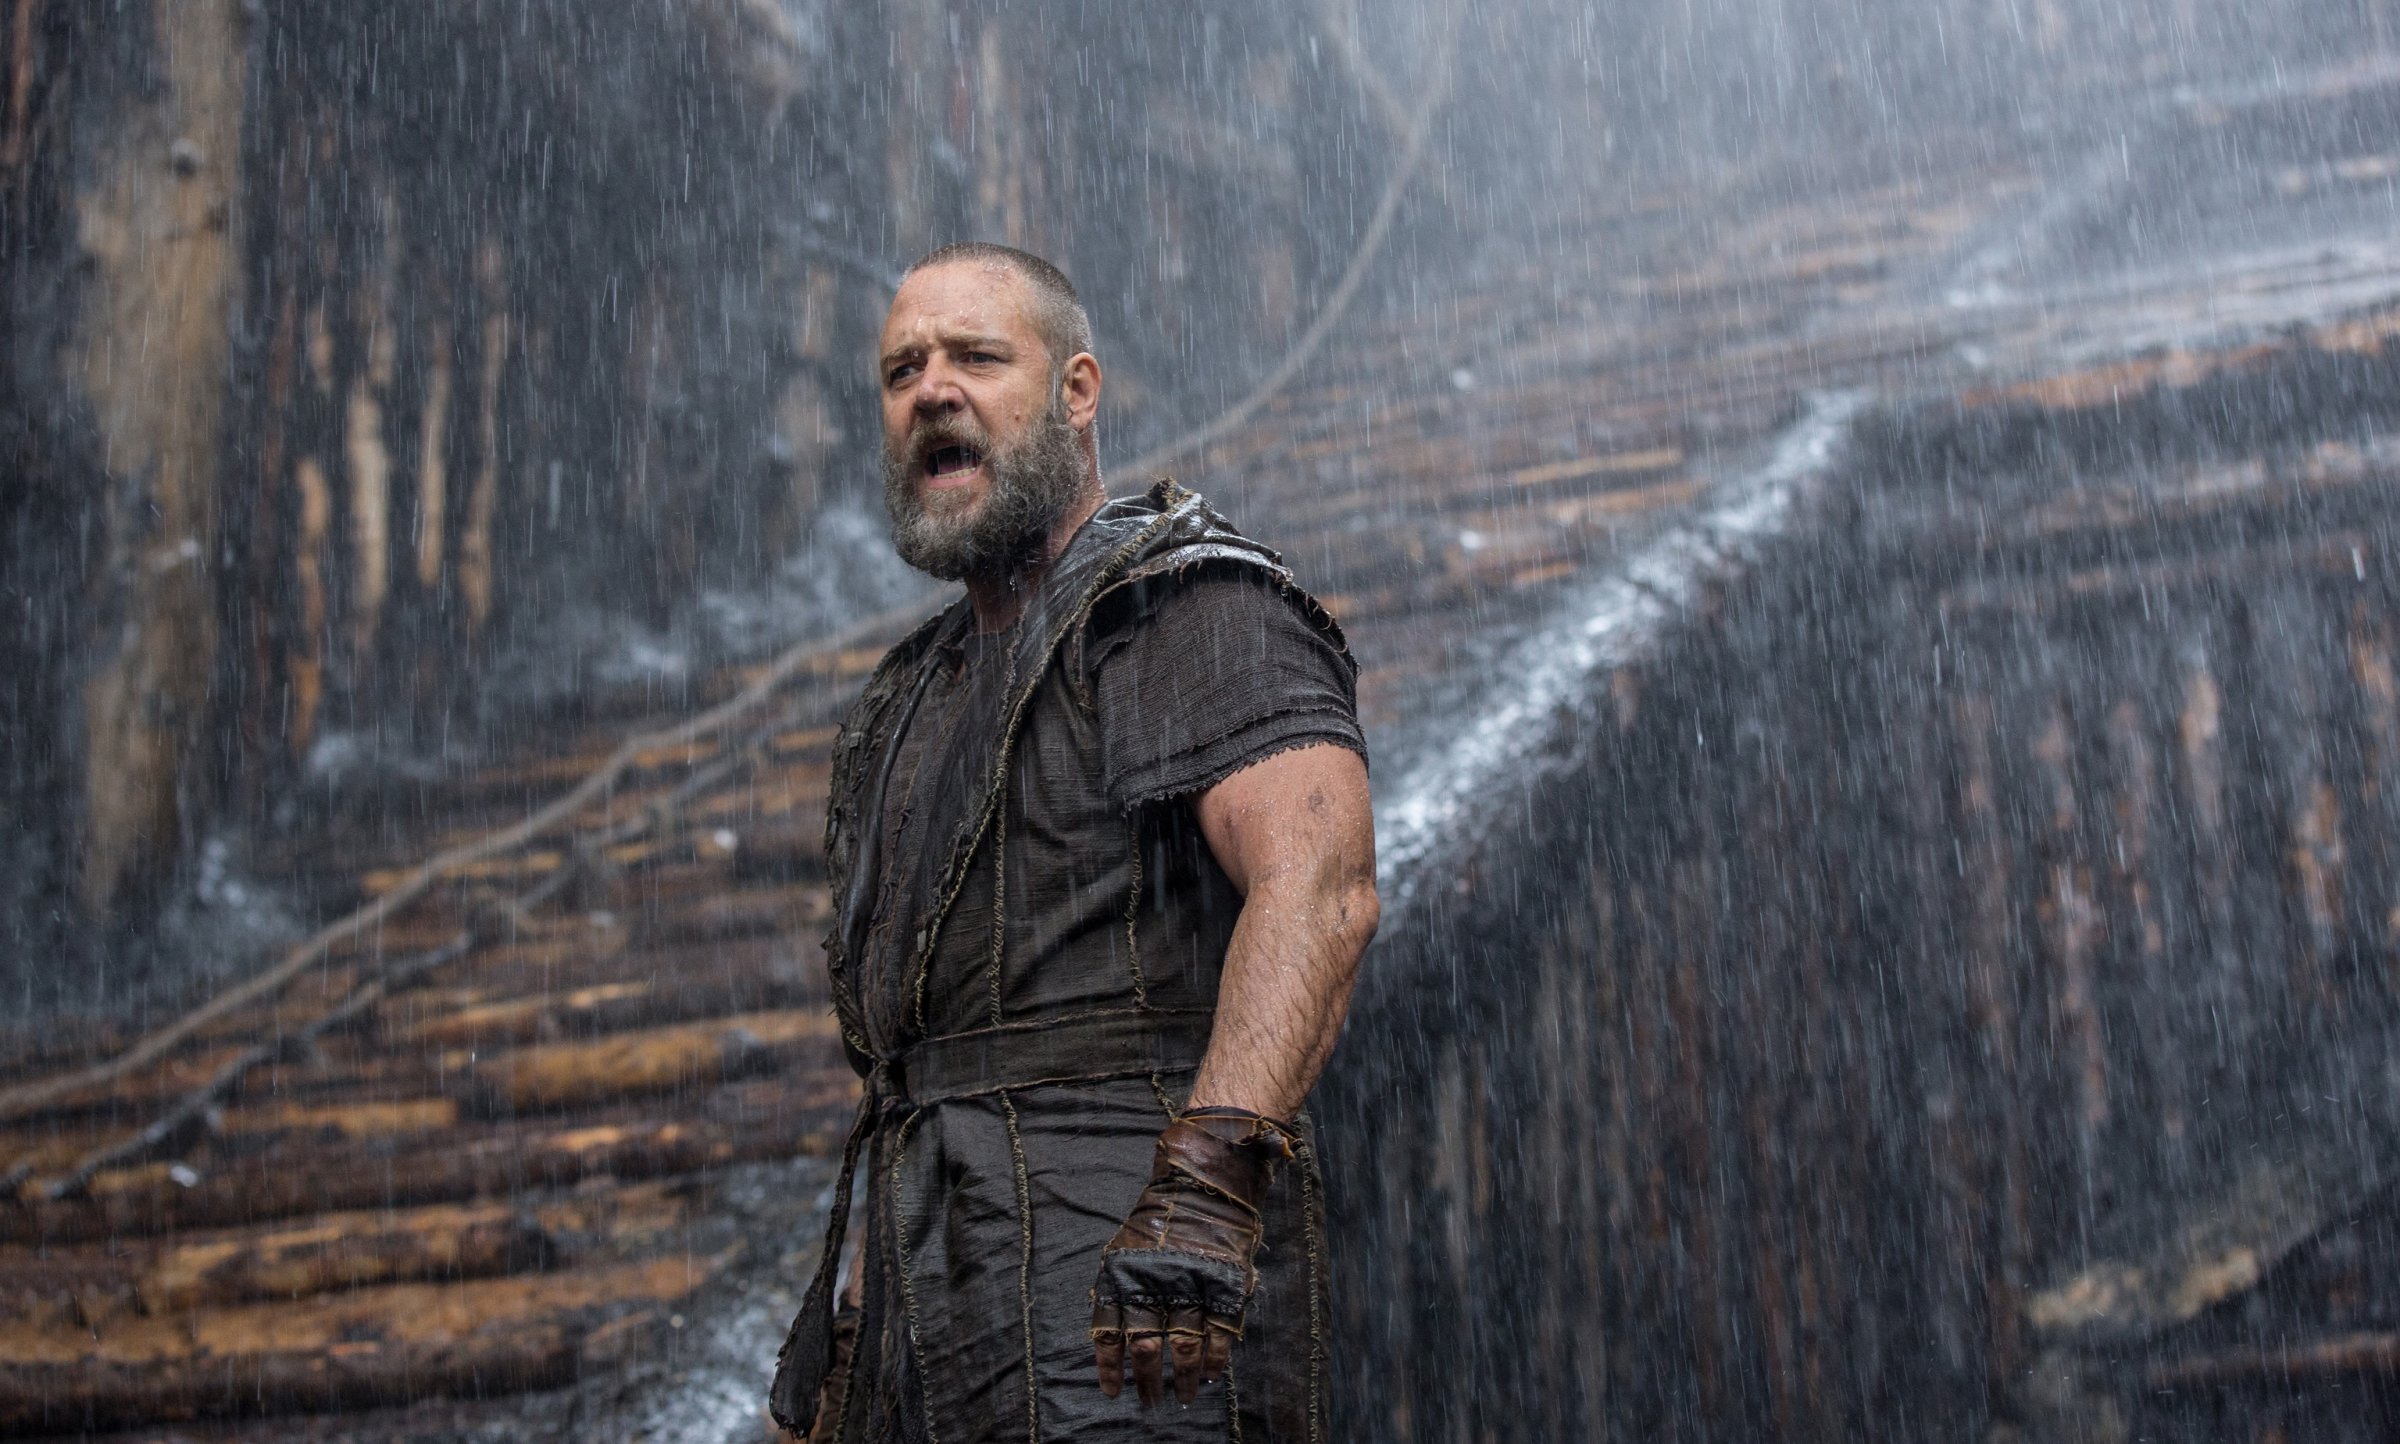 Russell Crowe in Noah